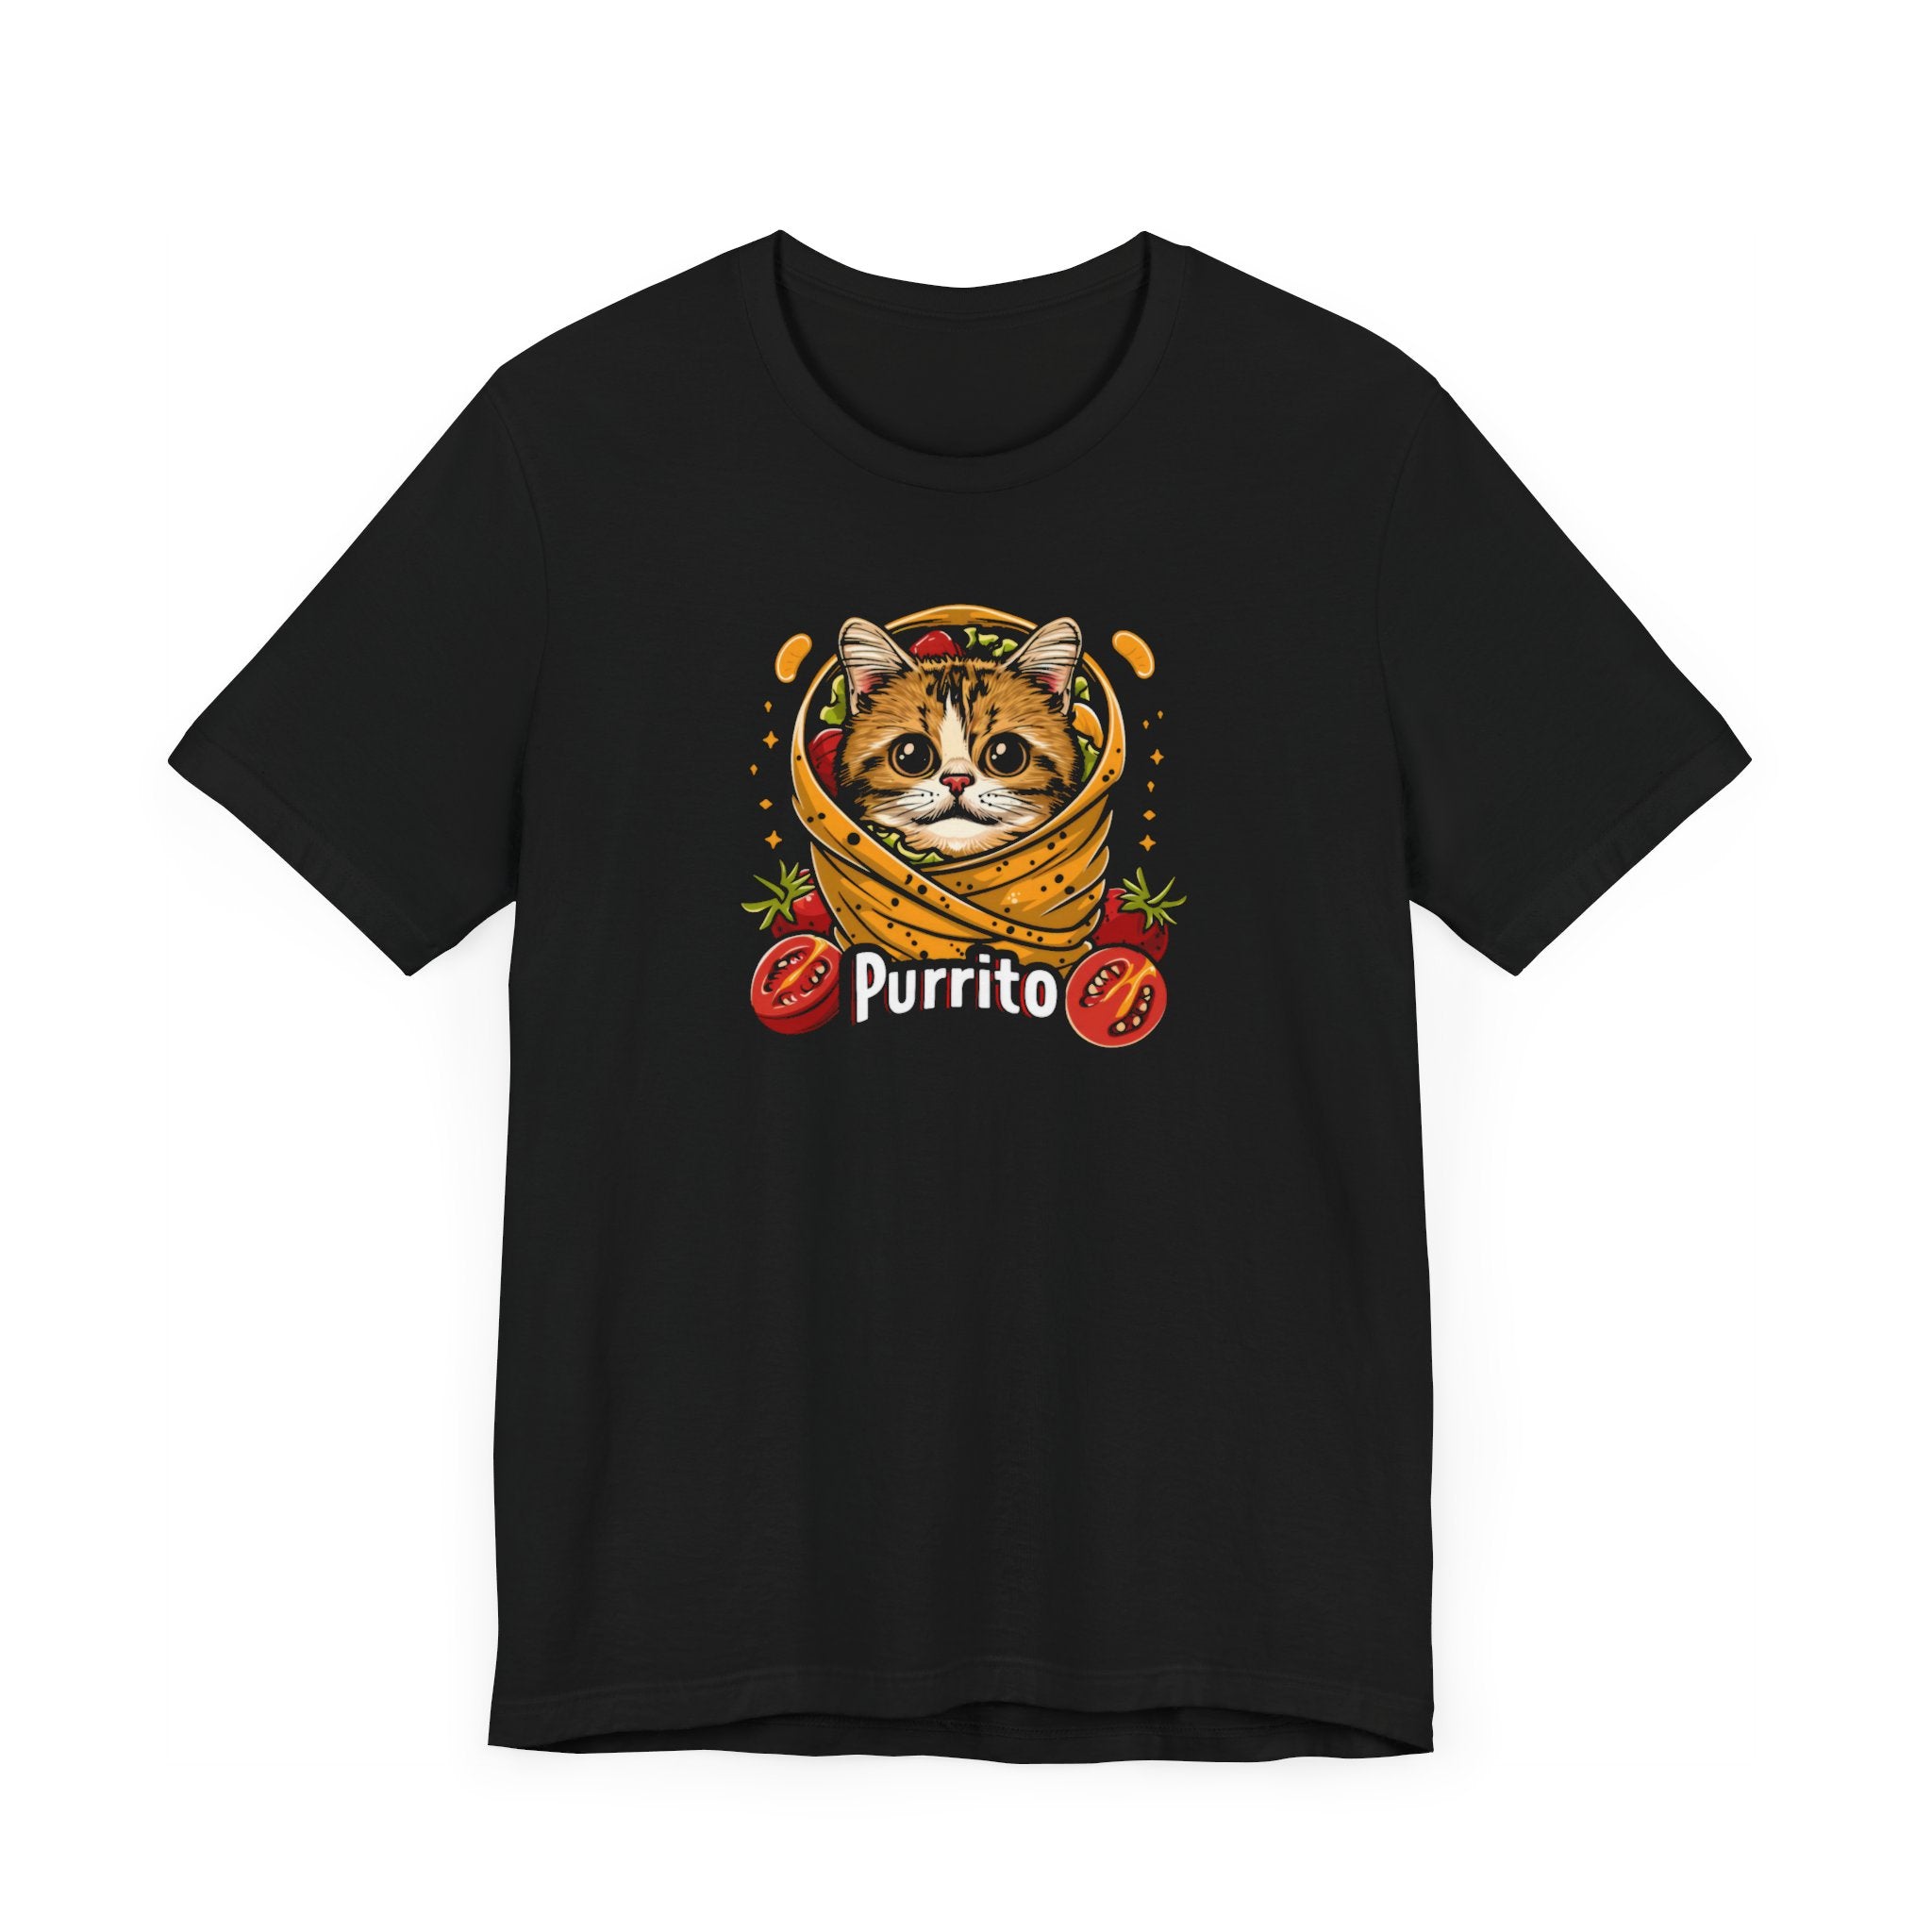 Purrito Cat T-Shirt - Cute Cat in a Burrito Design